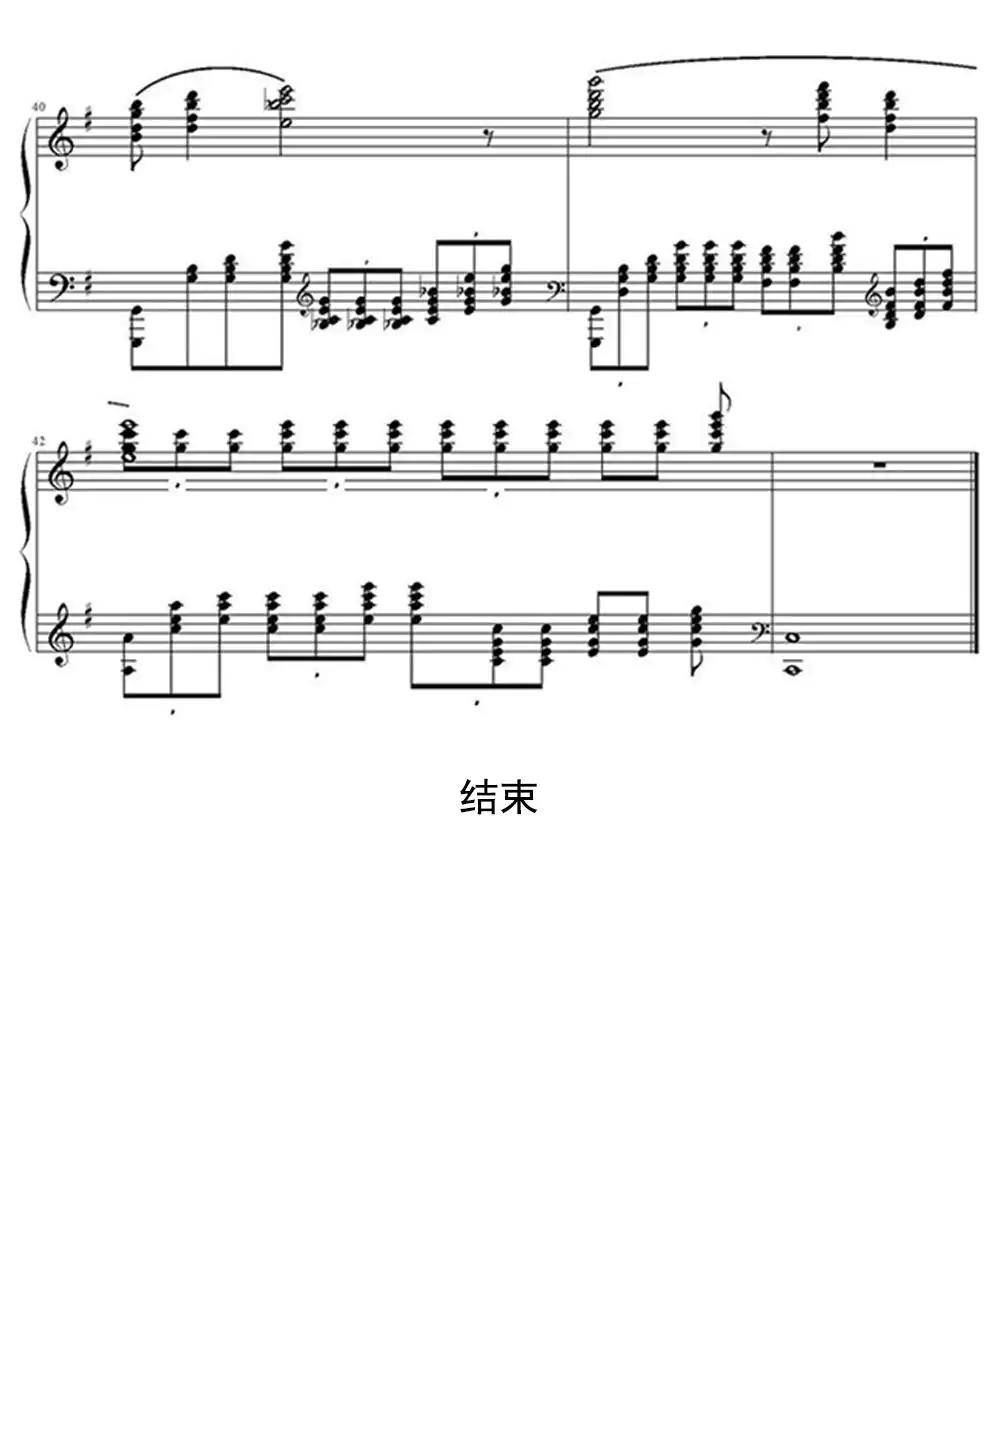 葫芦娃钢琴曲谱完整版图片